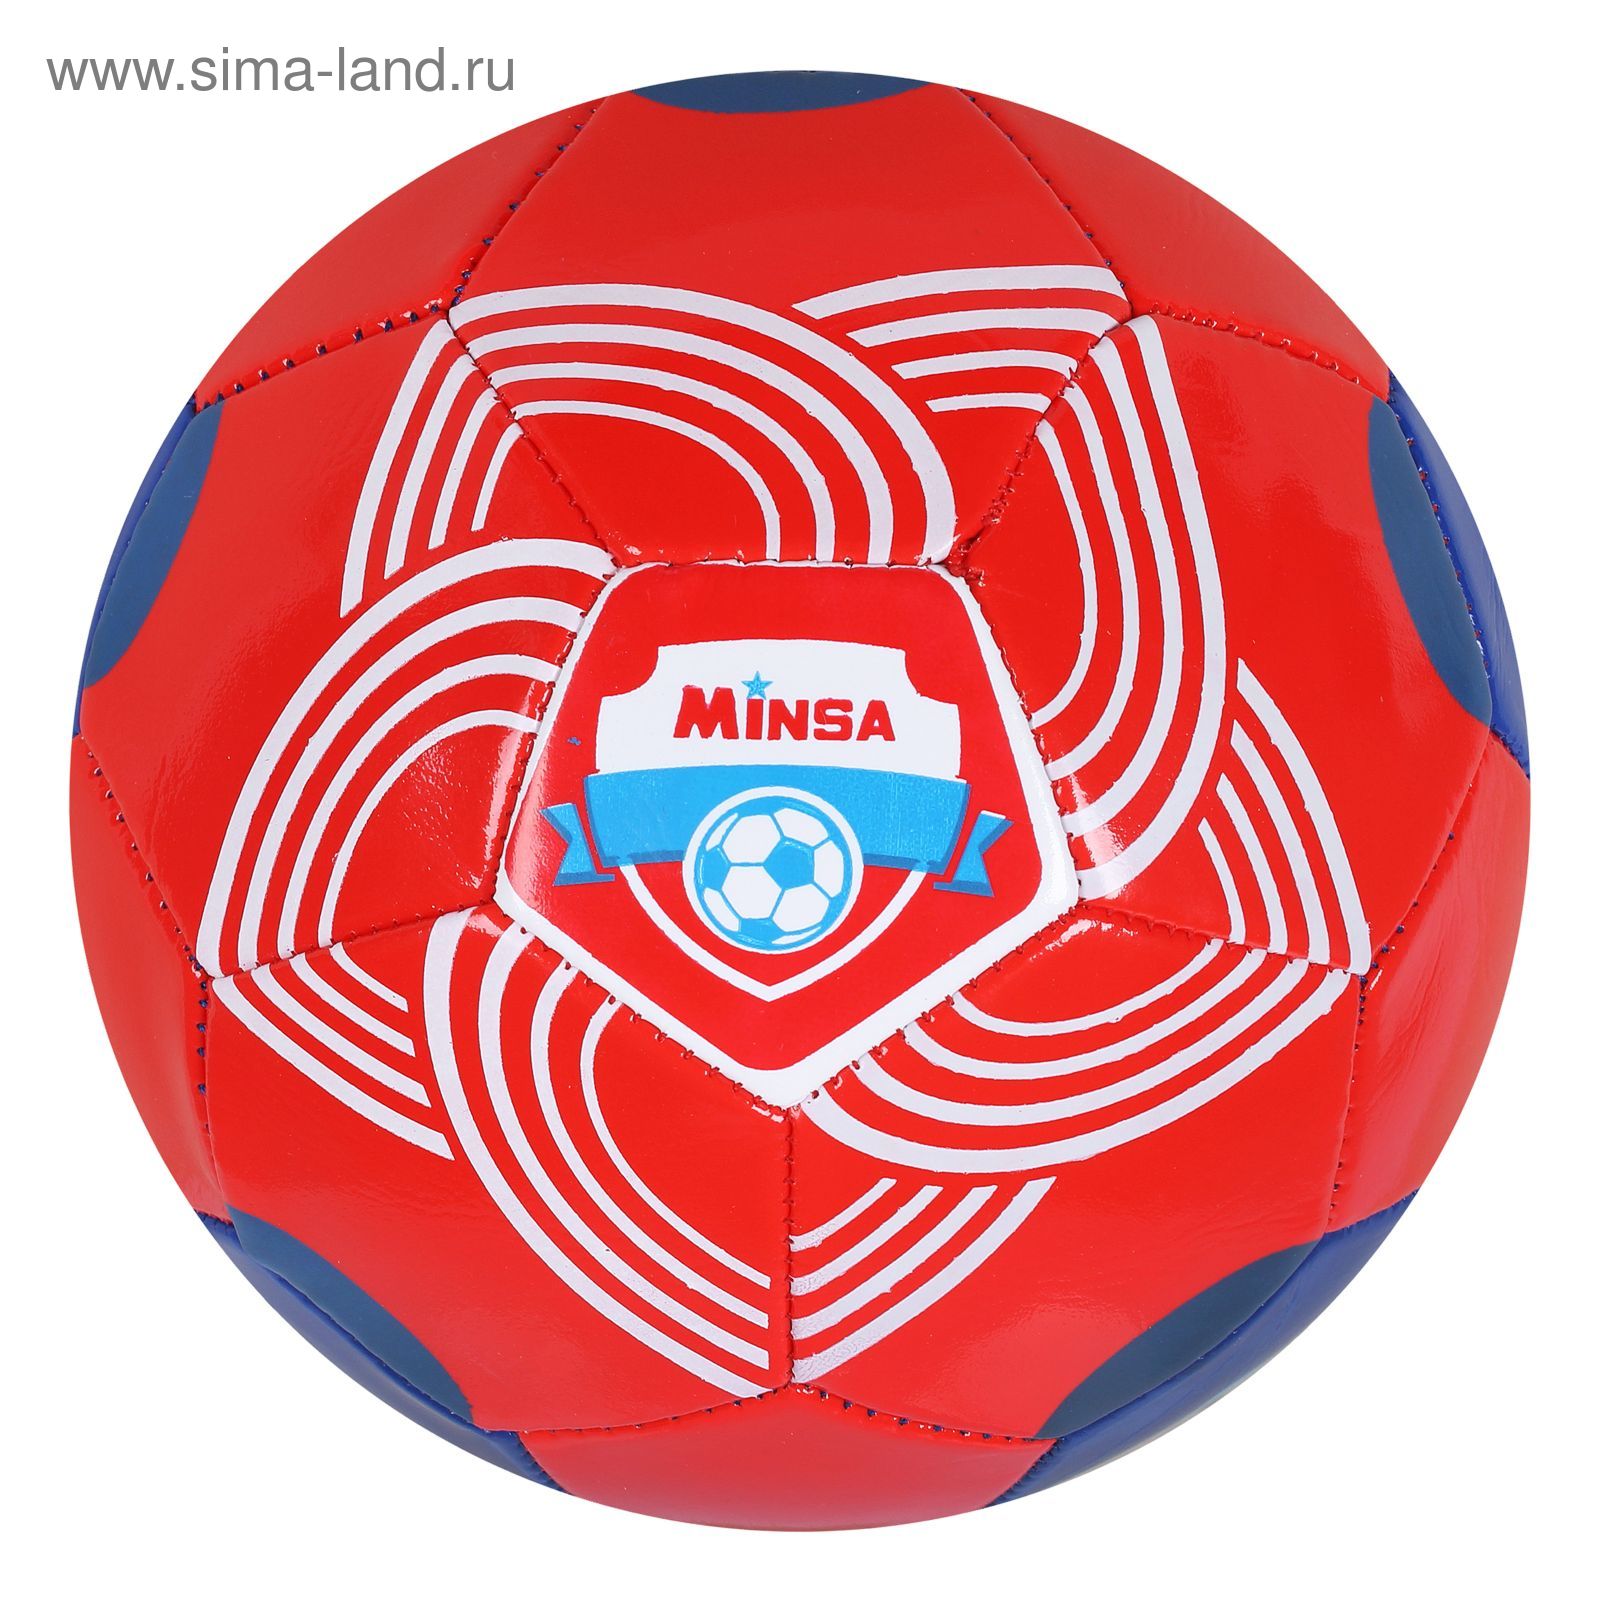 Мяч футбольный Minsa F17, 32 панели, PVC, 2 подслоя, машинная сшивка, размер 5